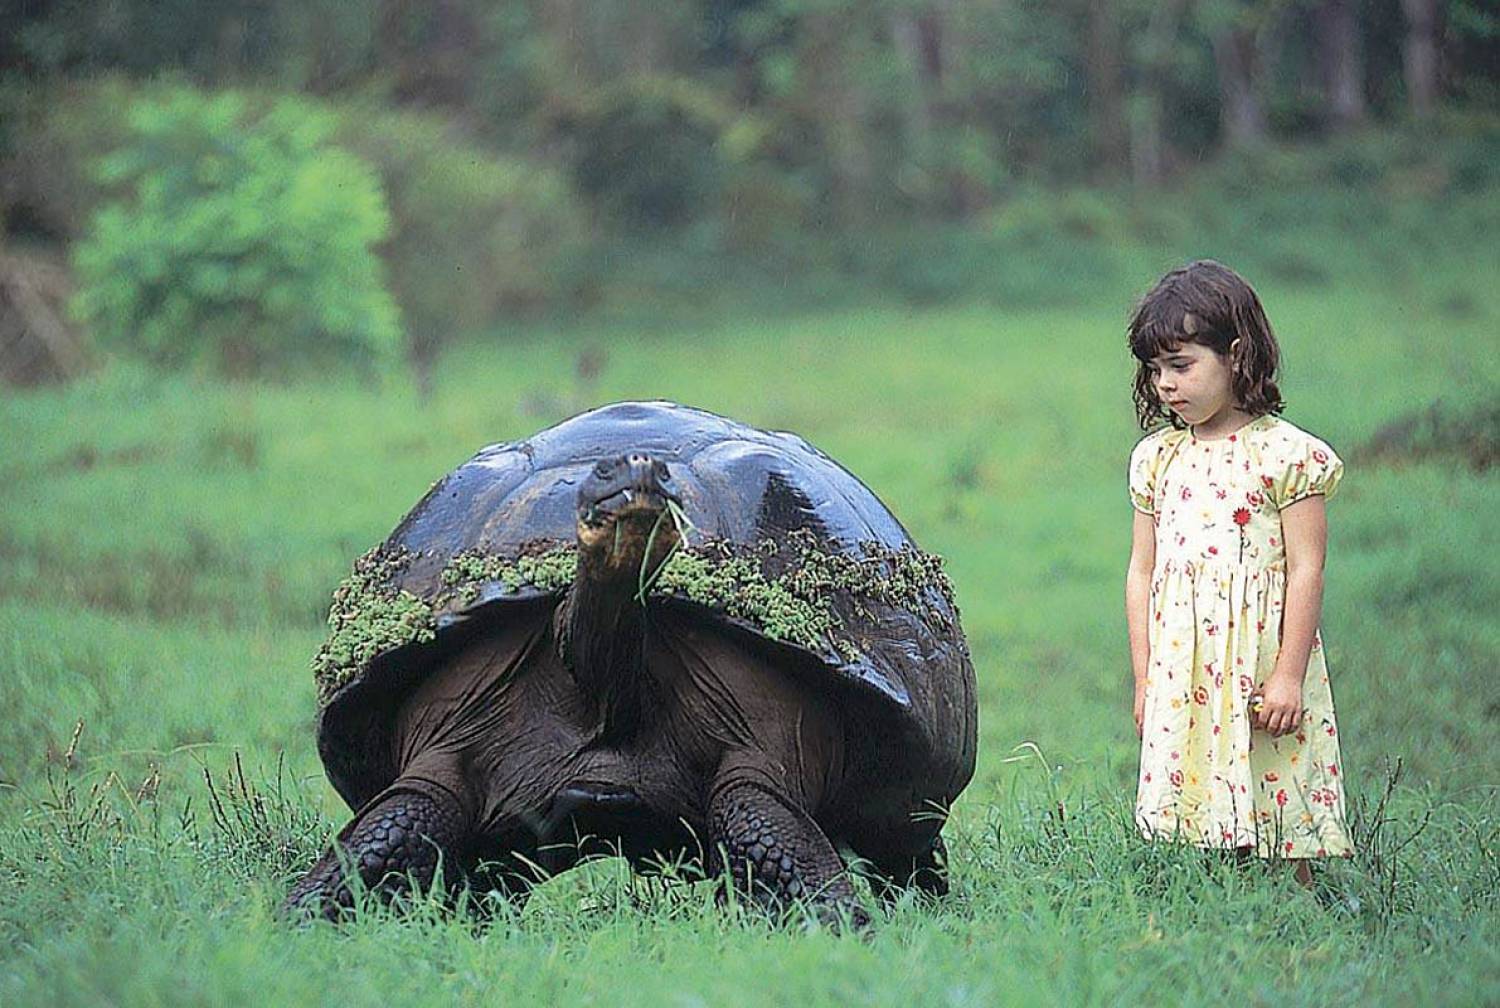 Галапагосская слоновая черепаха и человек